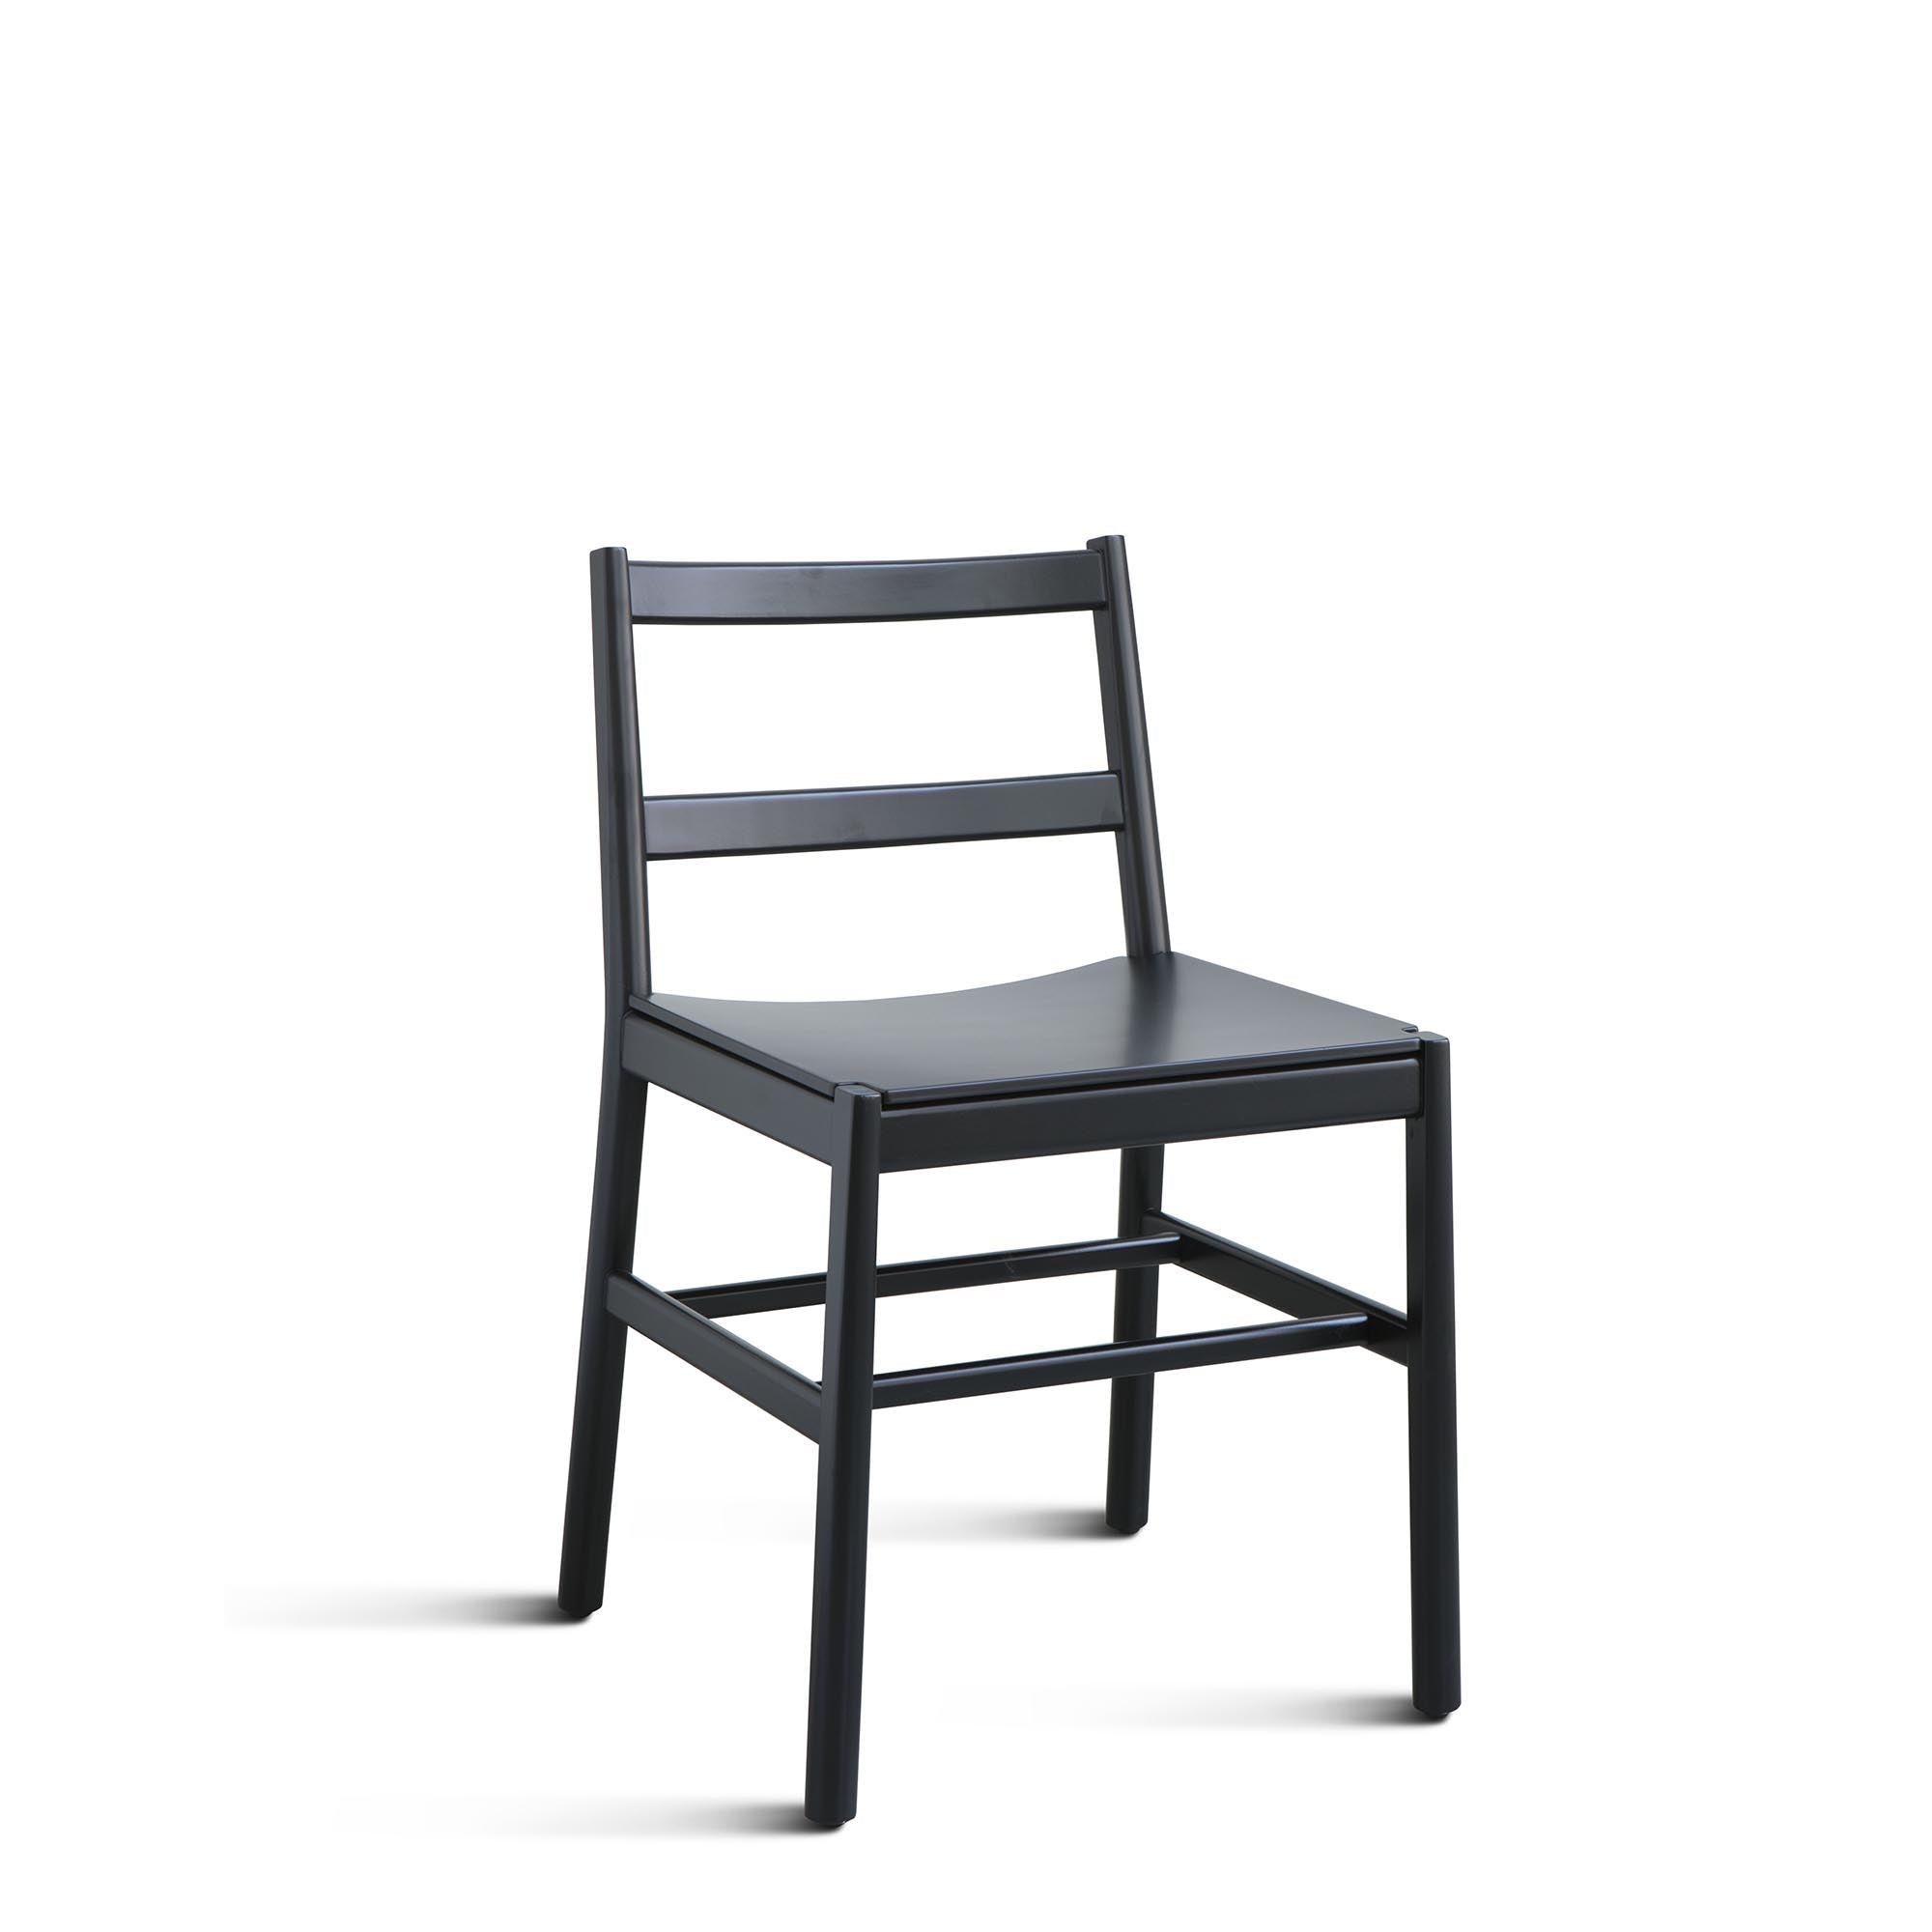 JULIE LE Chair beech wood frame black colour